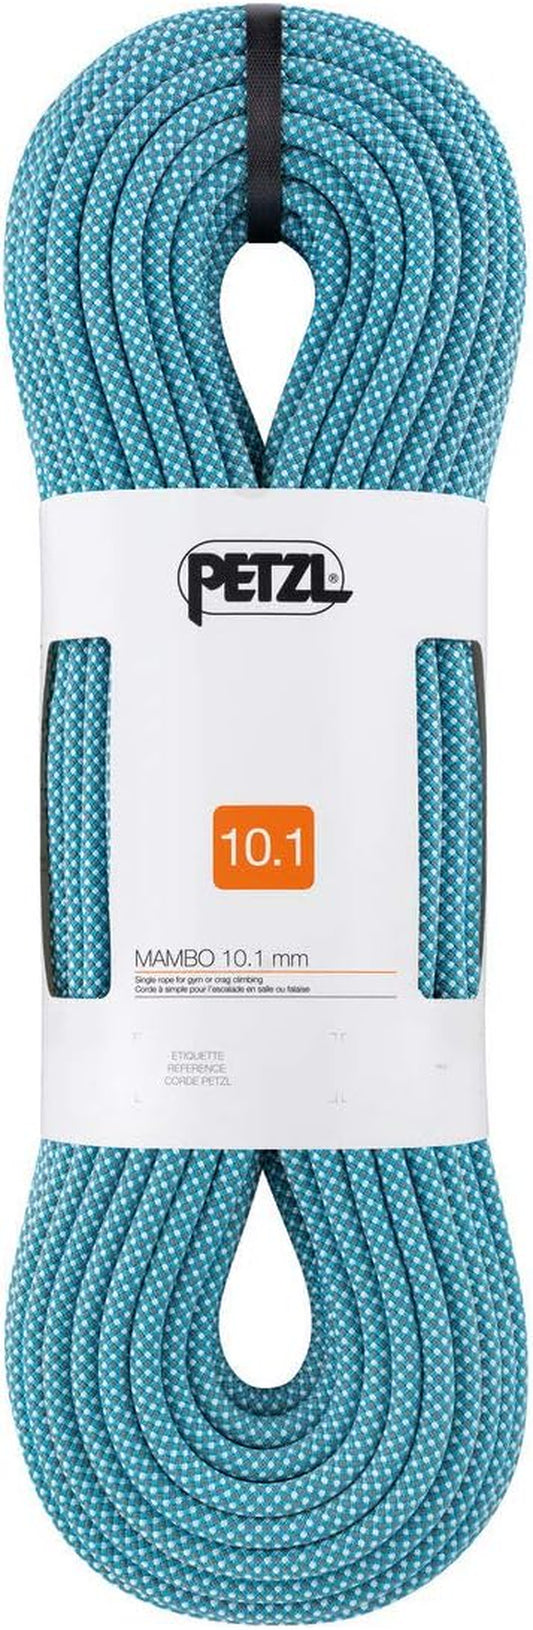 Petzl Mambo Rope - 10.1 mm